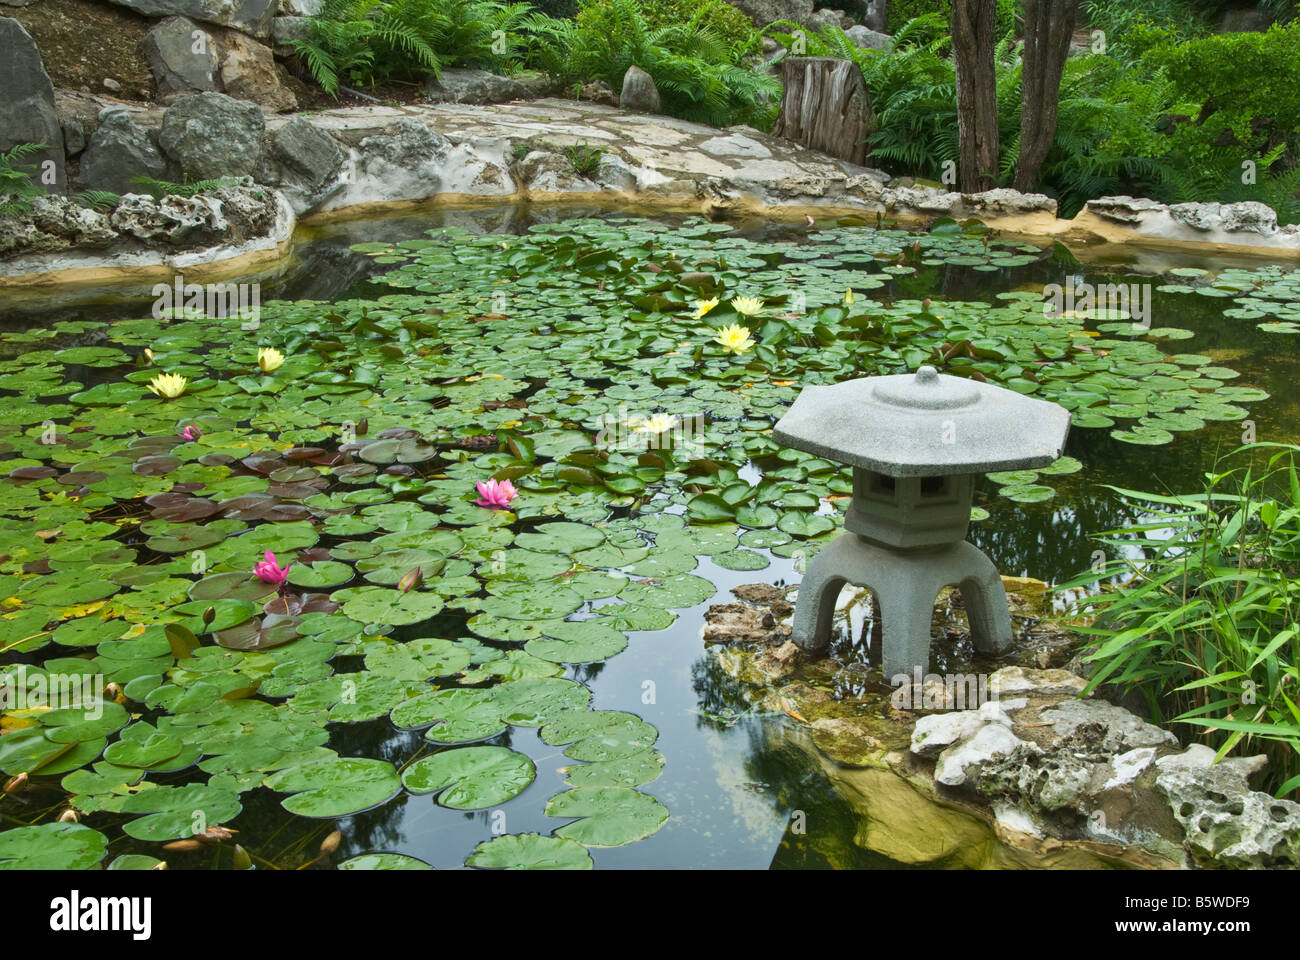 Texas Hill Country Austin Zilker botanischen Garten Taniguchi japanischen Garten-Koi-Teich Stockfoto